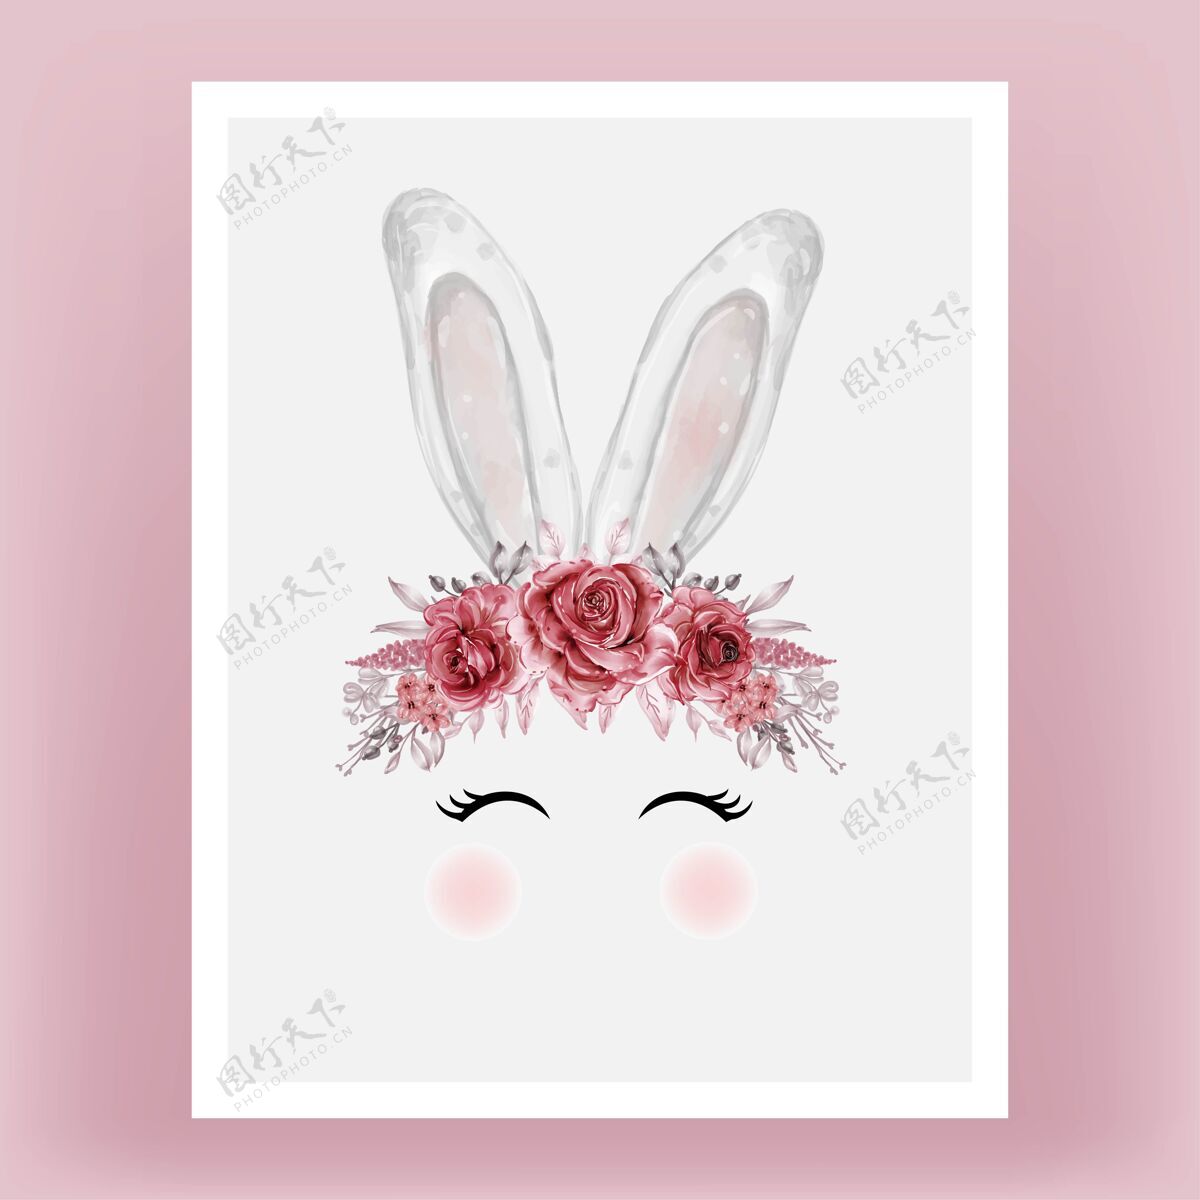 装饰兔子头水彩花红色栗色手绘插图手动物可爱